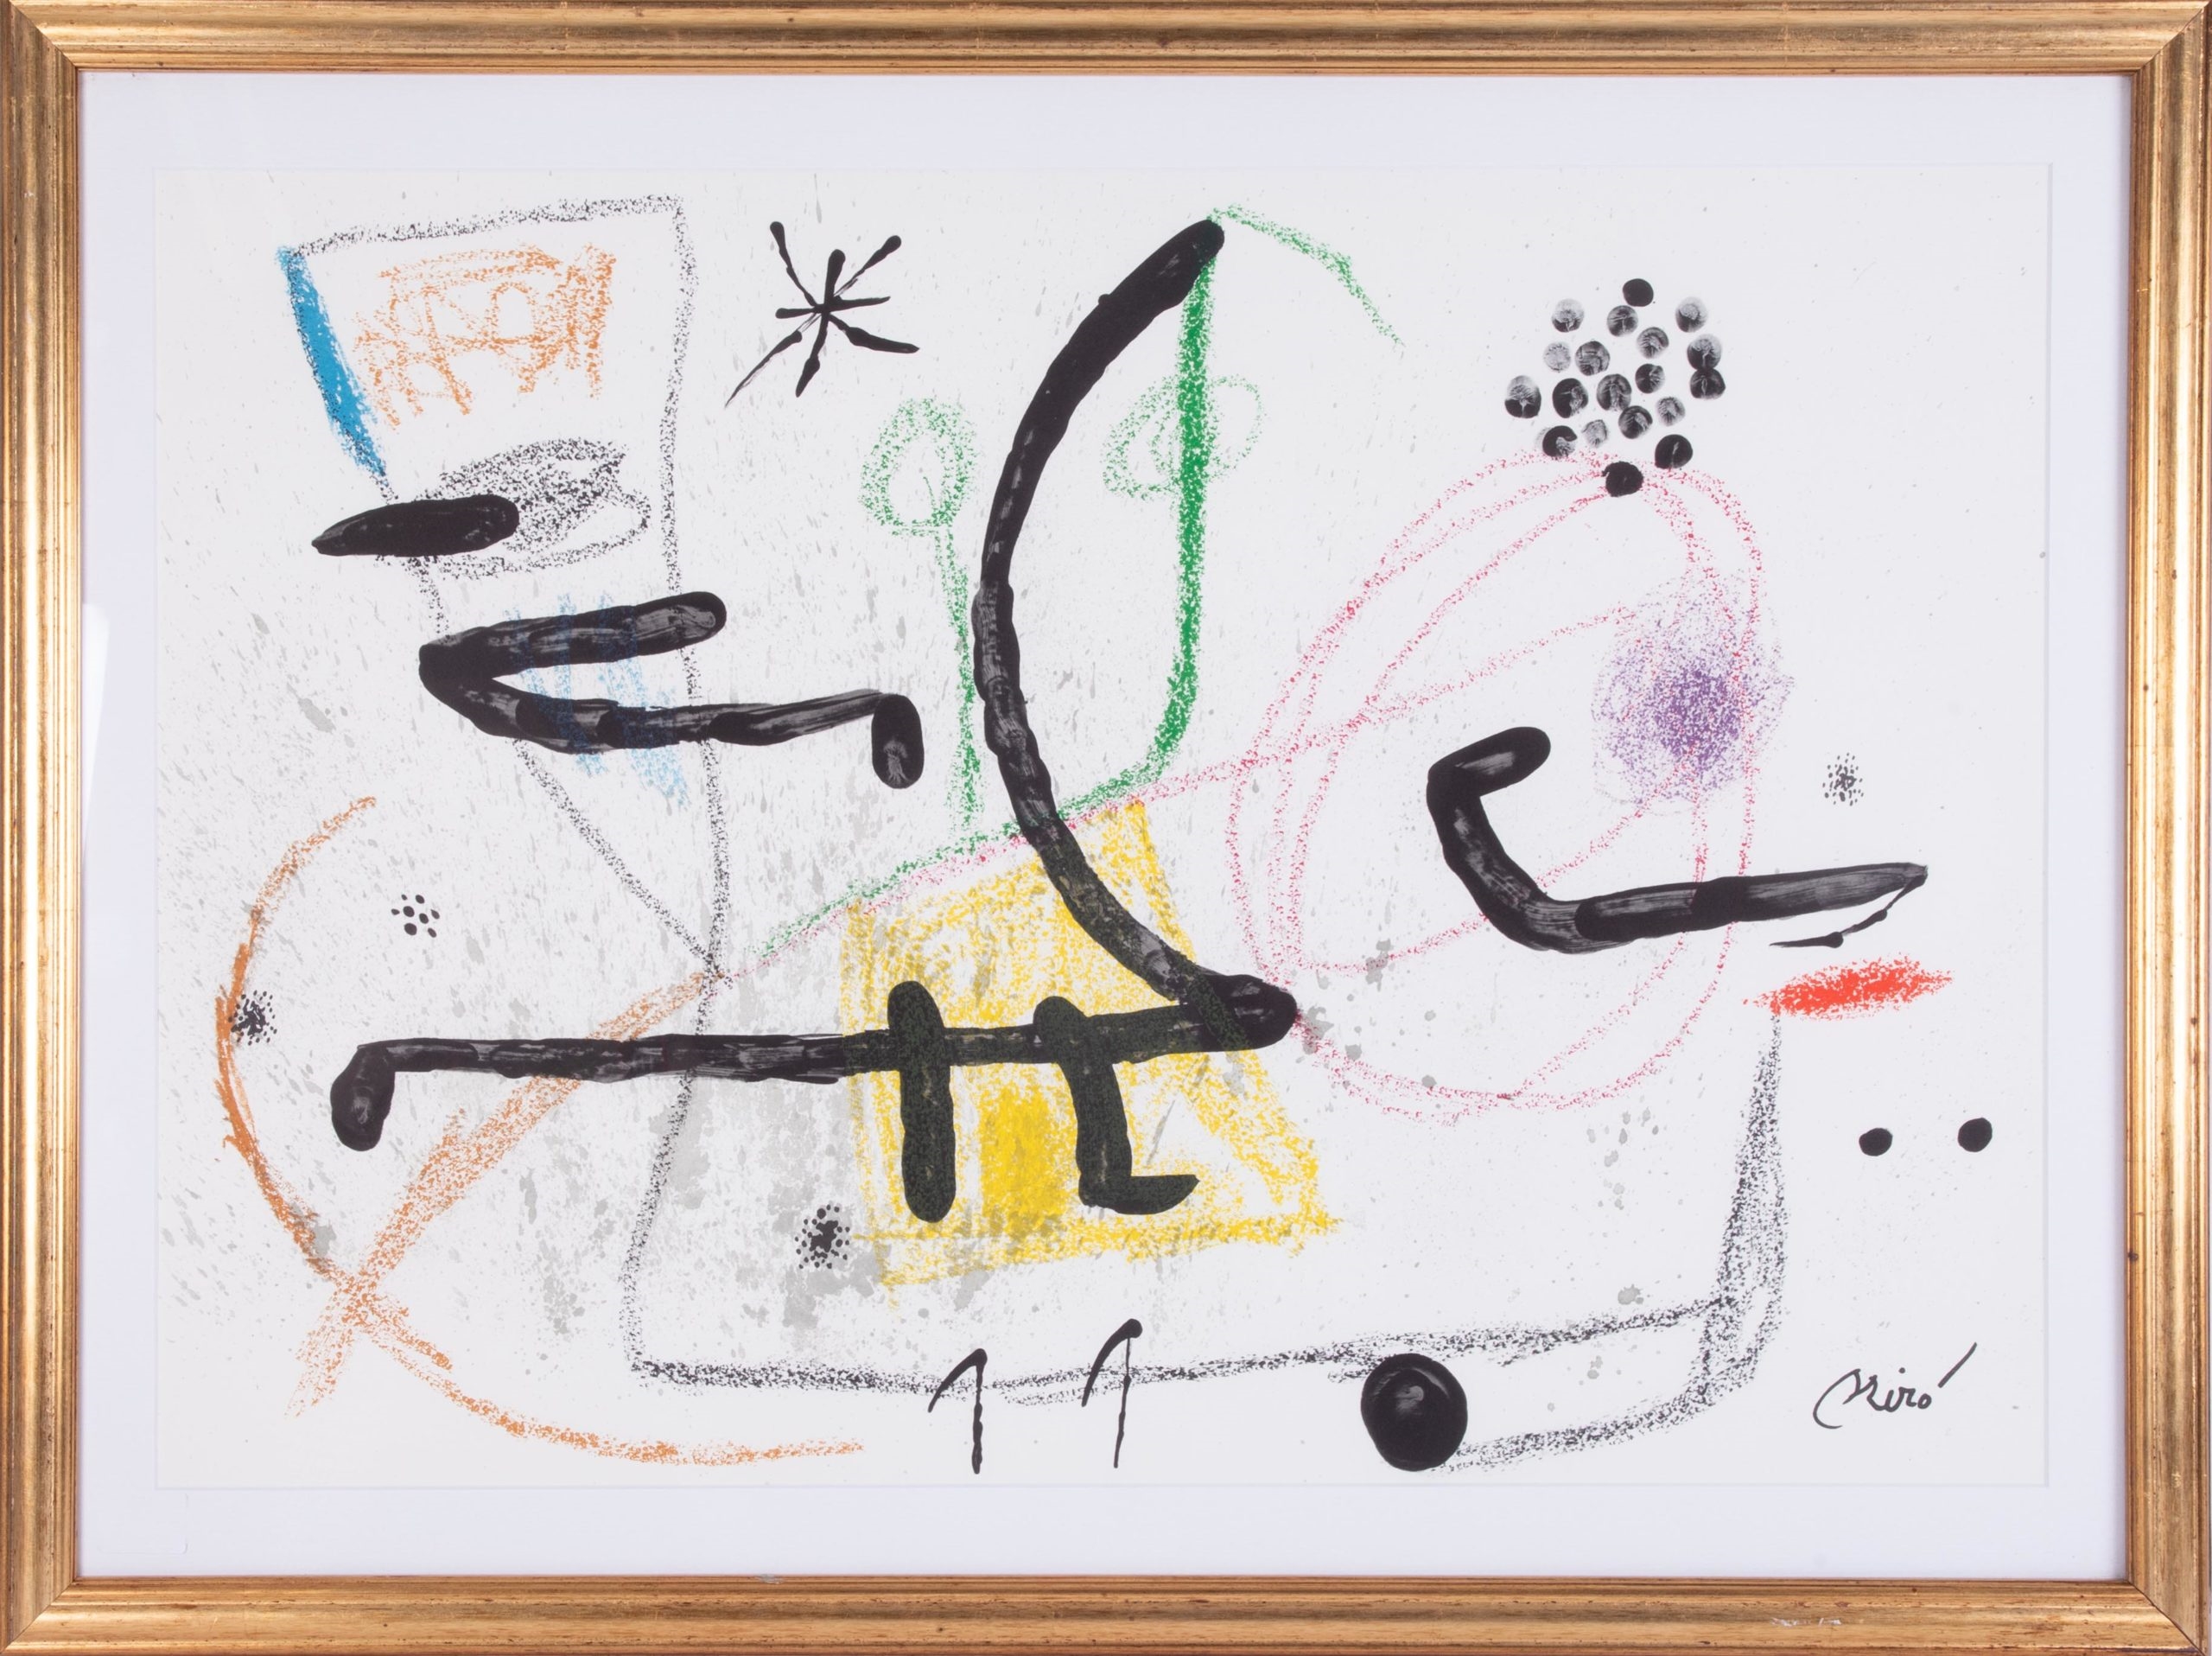 Maravillas con variaciones by Joan Miró, 1975